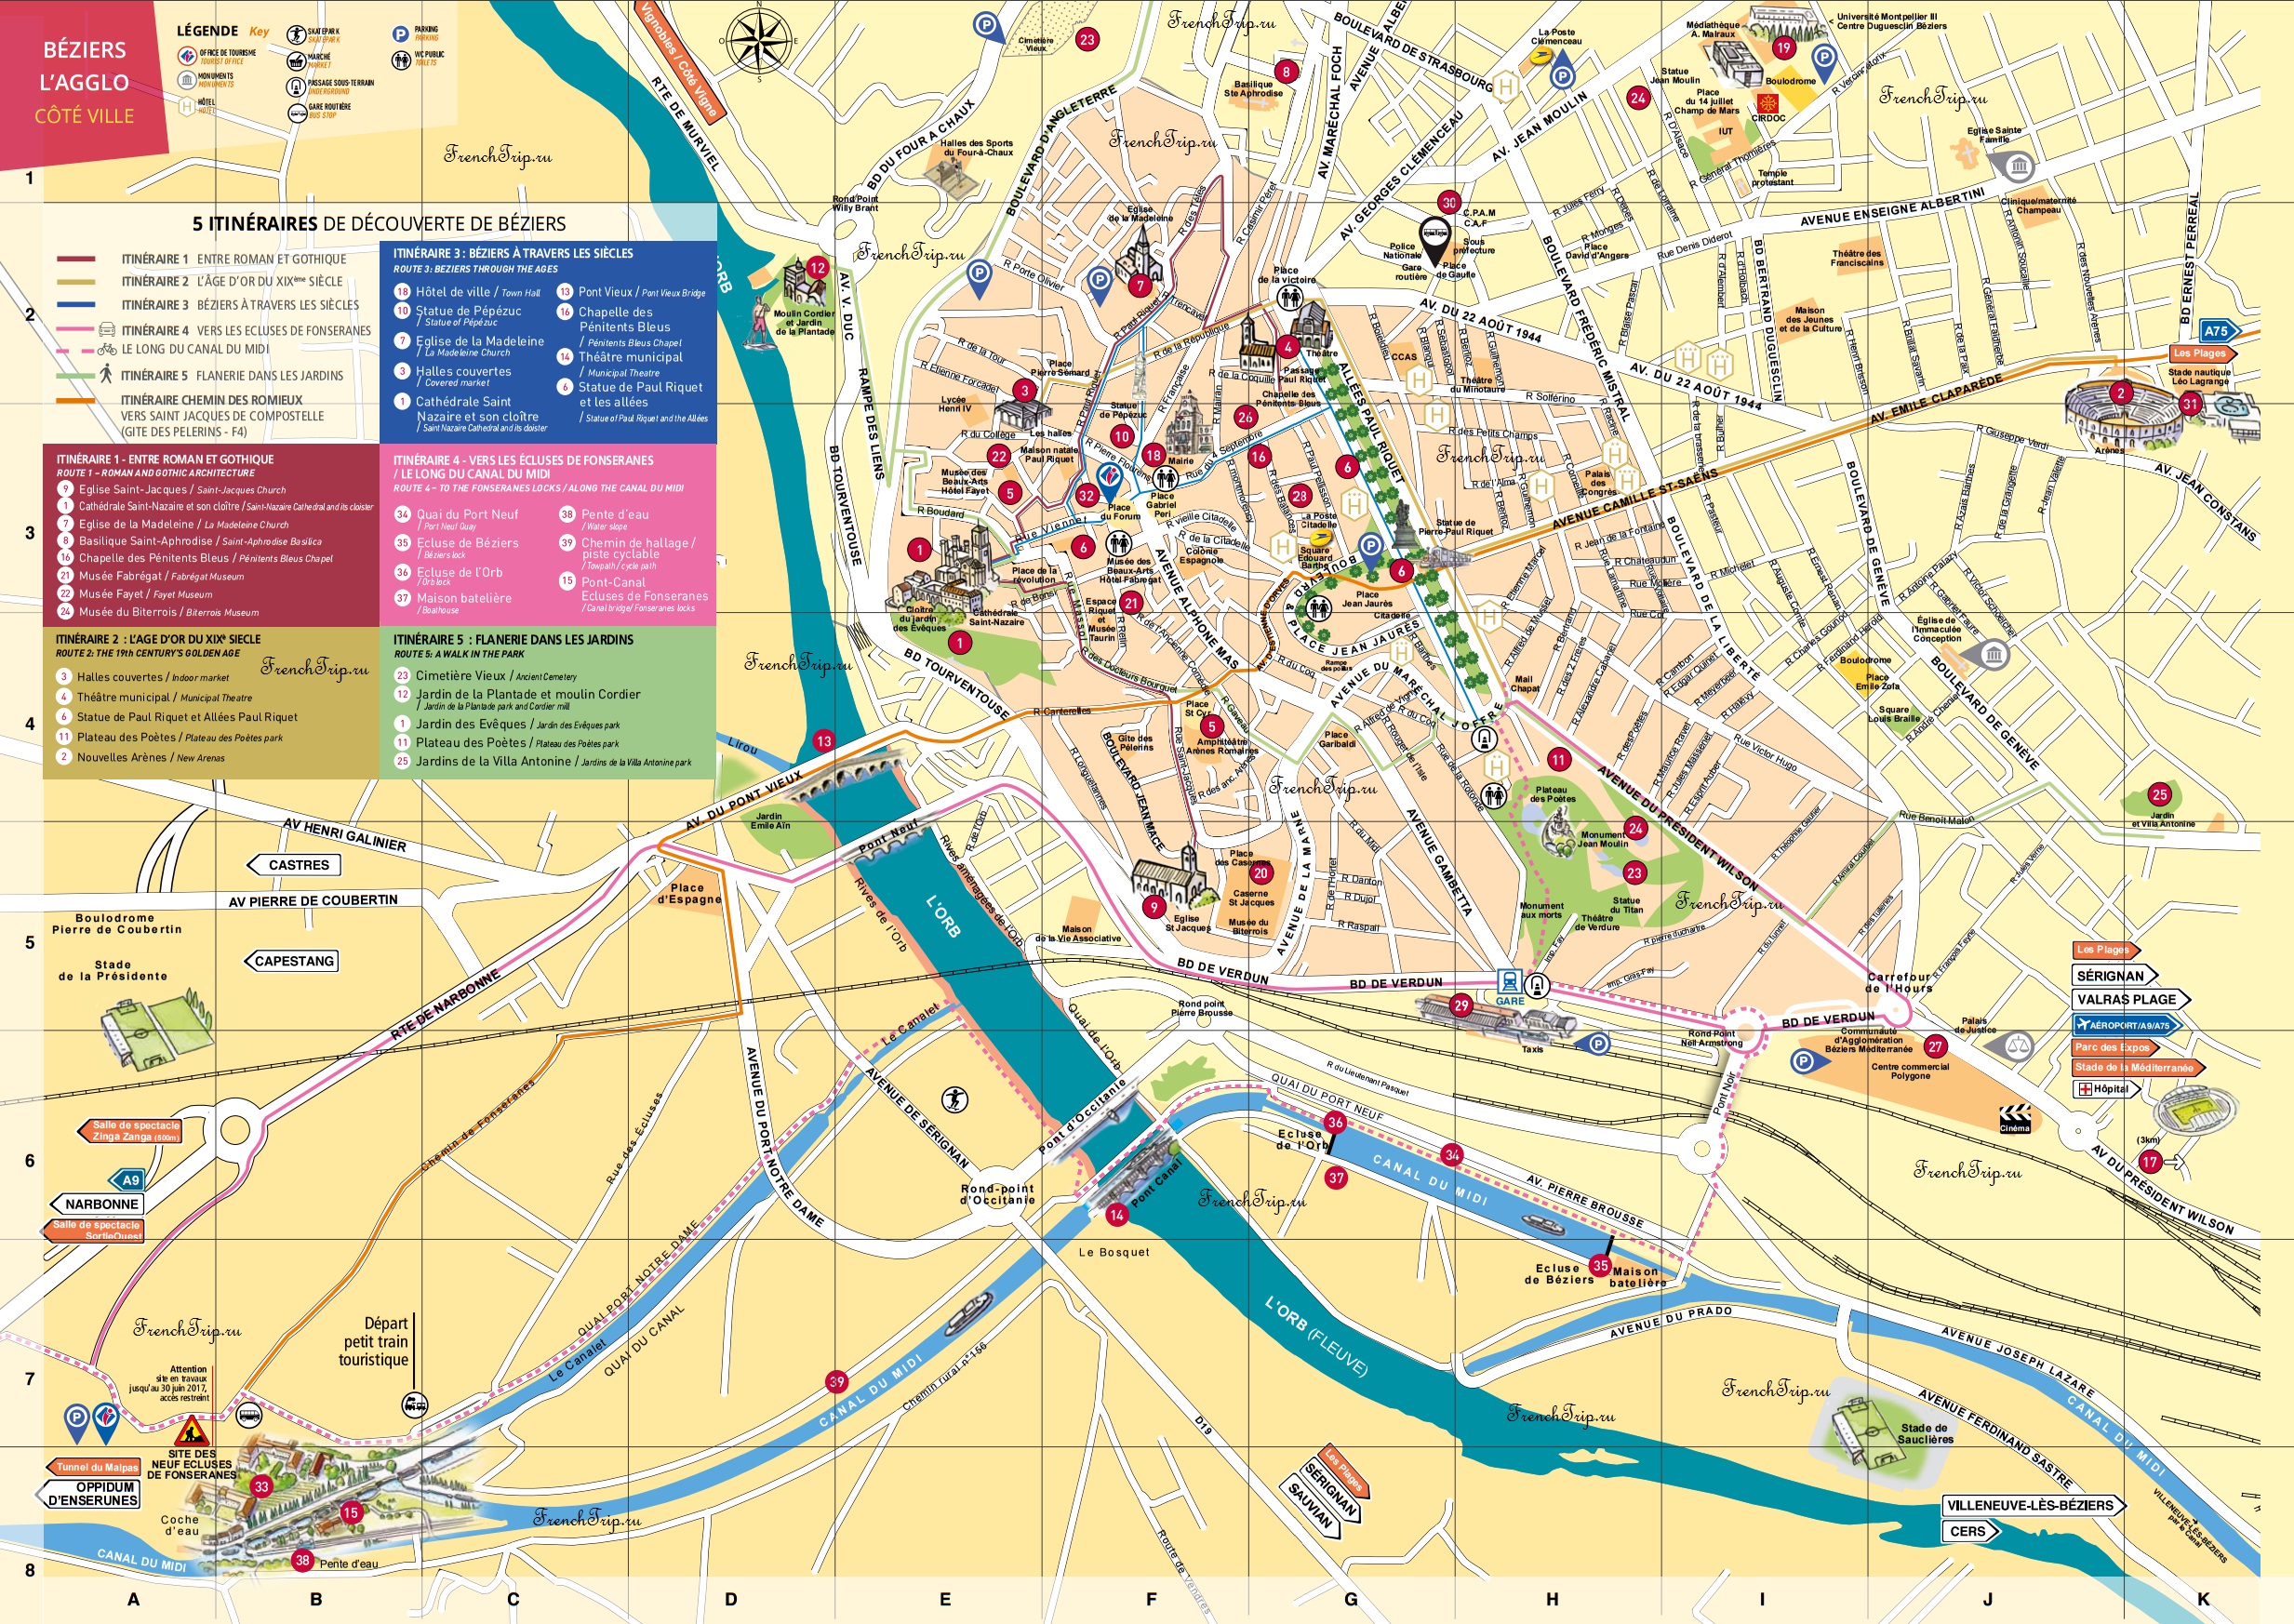 Достопримечательности Безье на карте города - туристическая карта Безье, Франция - путеводитель по городу Безье, что посмотреть в Безье